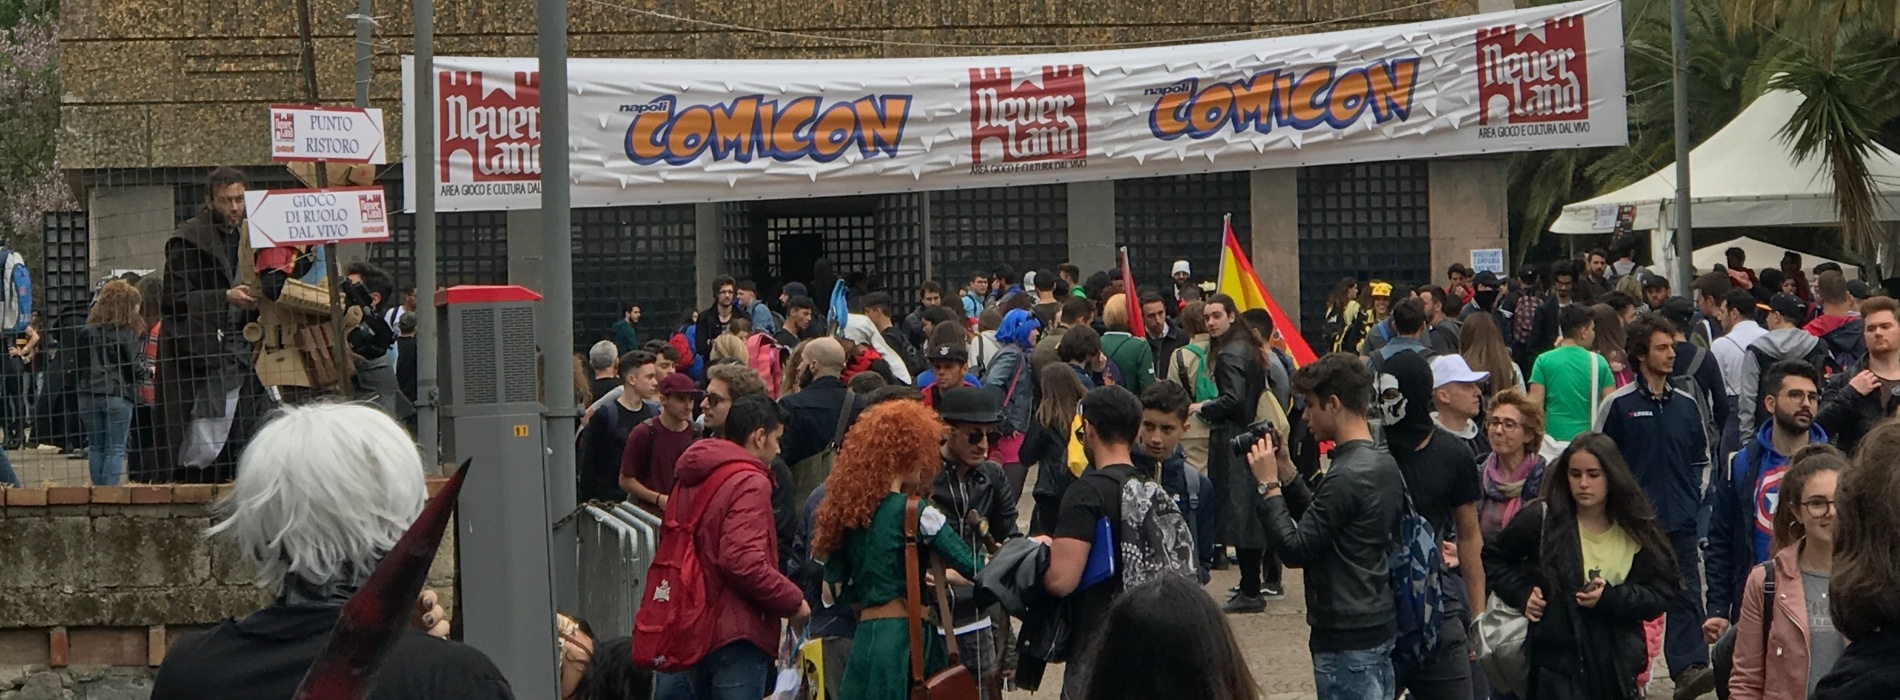 Comicon Napoli, in giro tra i cosplay nella Mostra d’Oltremare